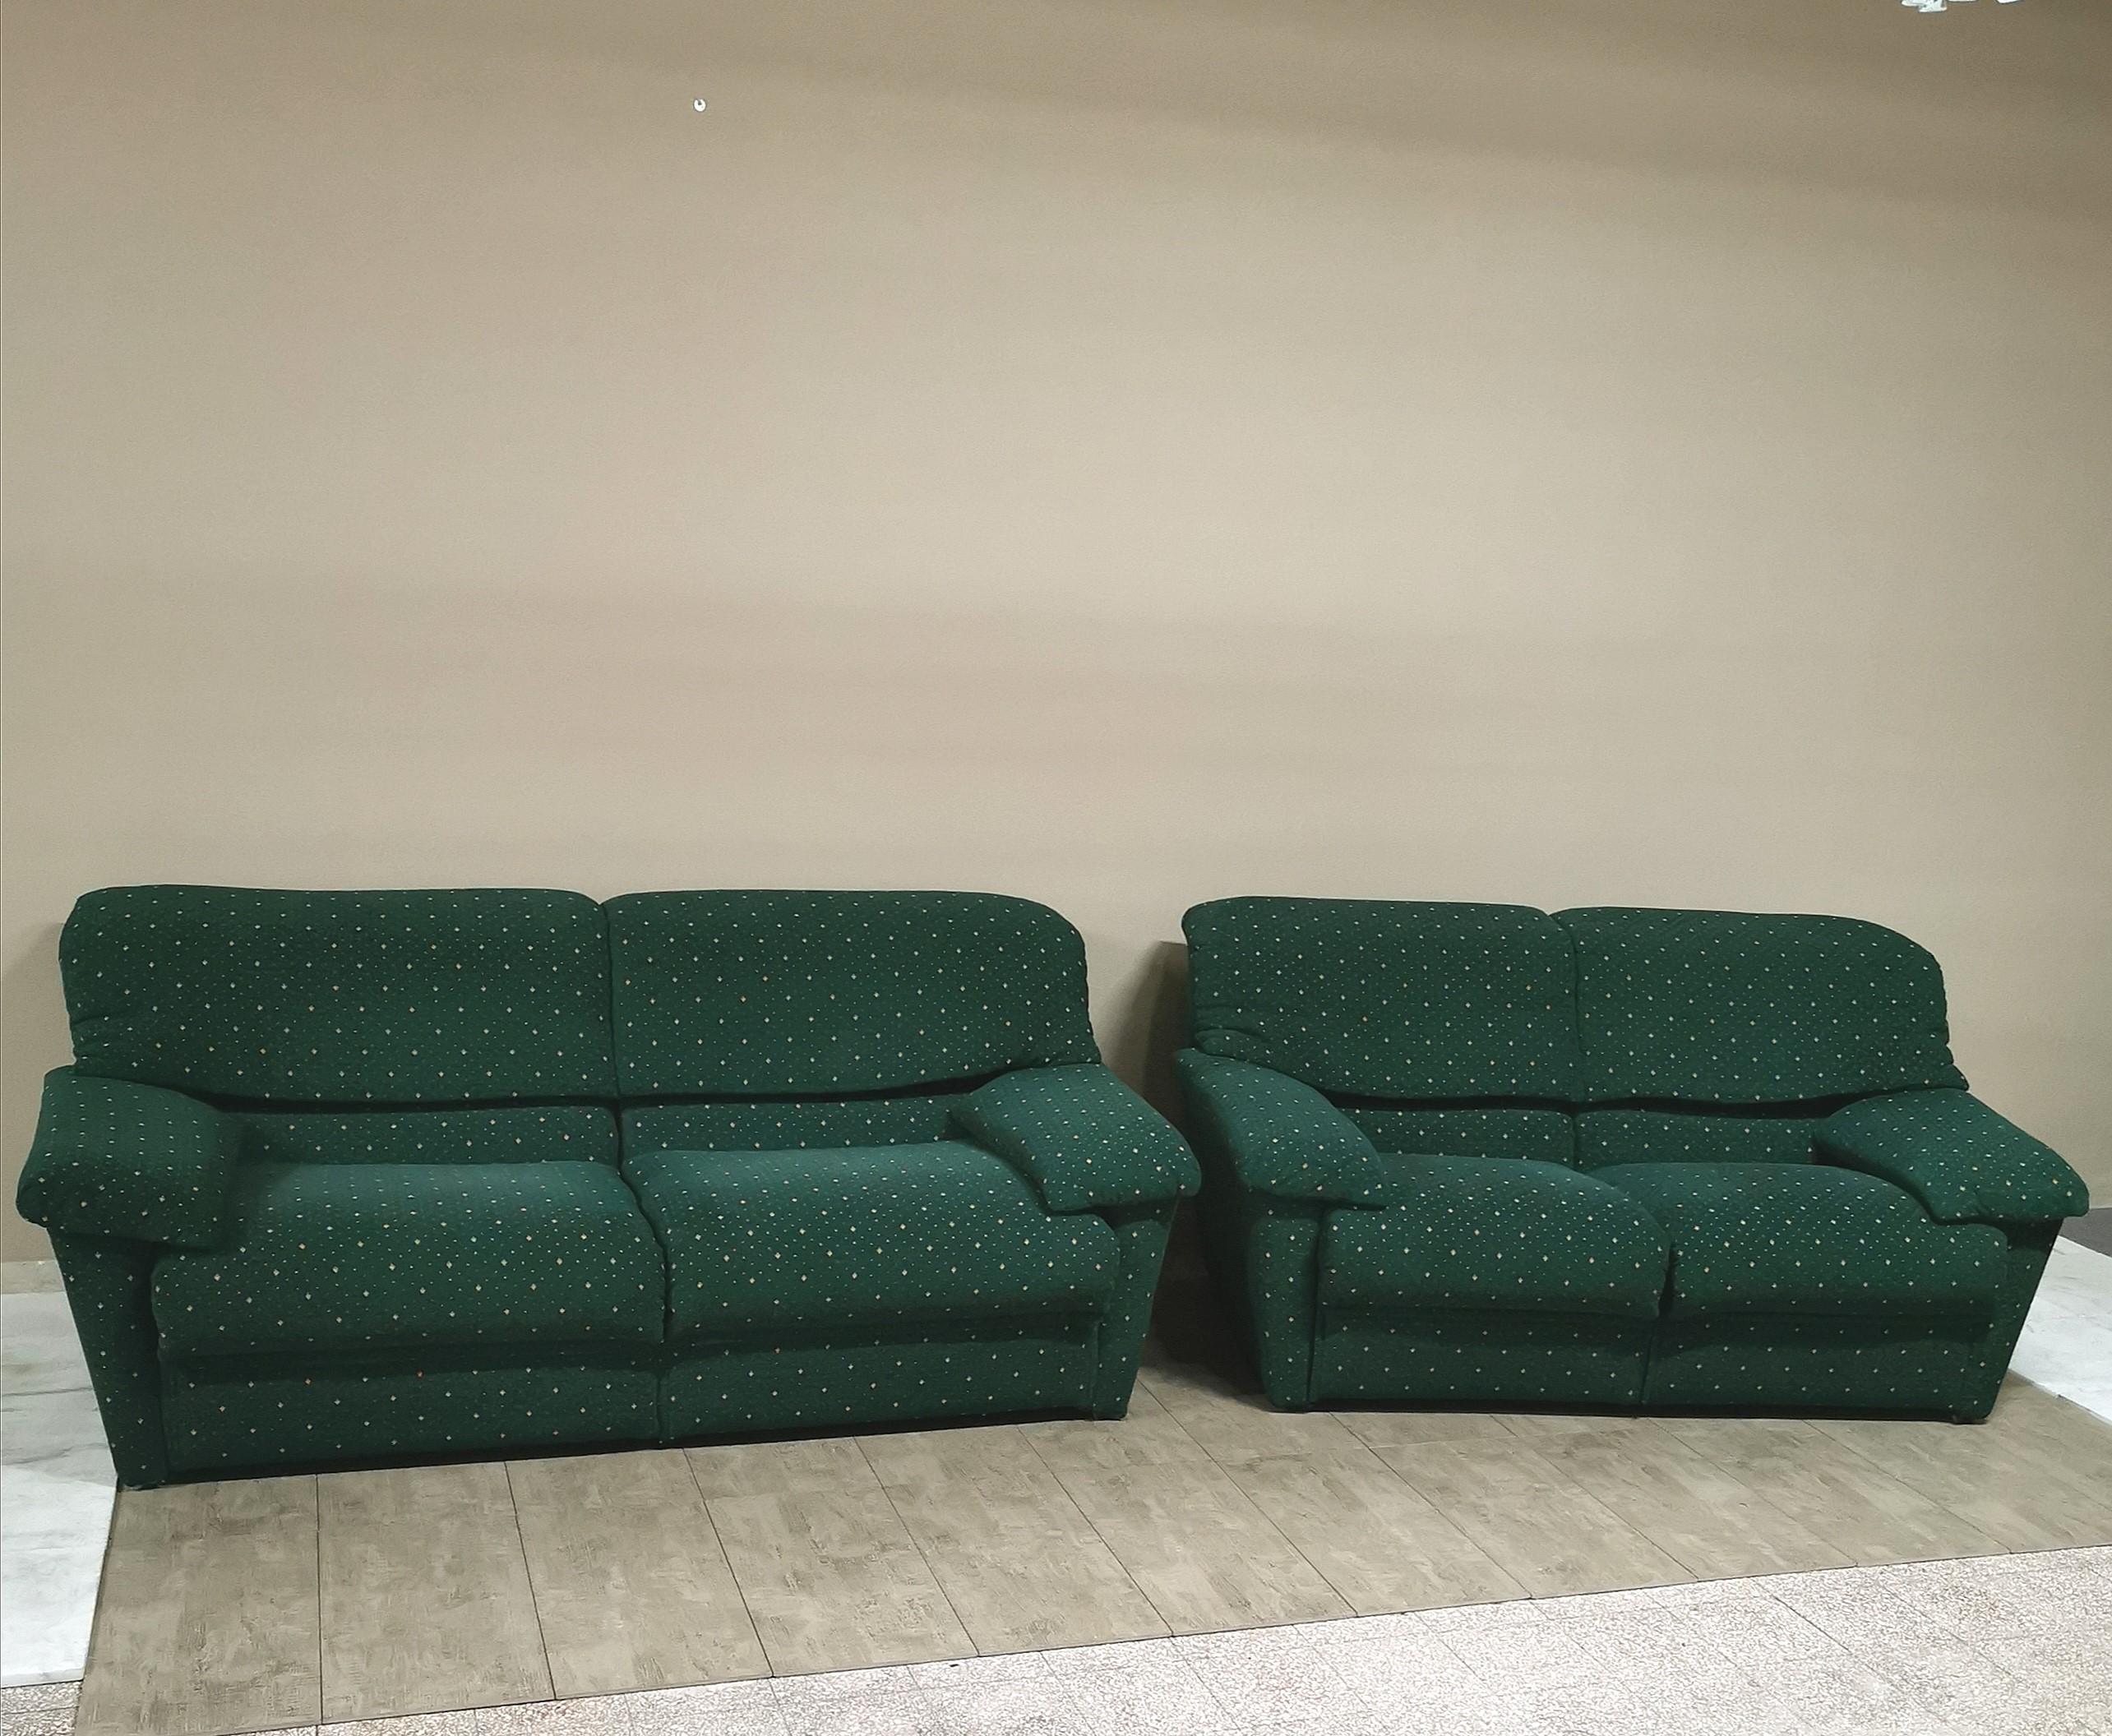  Sofa Green Velvet 3 Seat by Pol 74 Postmodern Italian Design 1990s 6